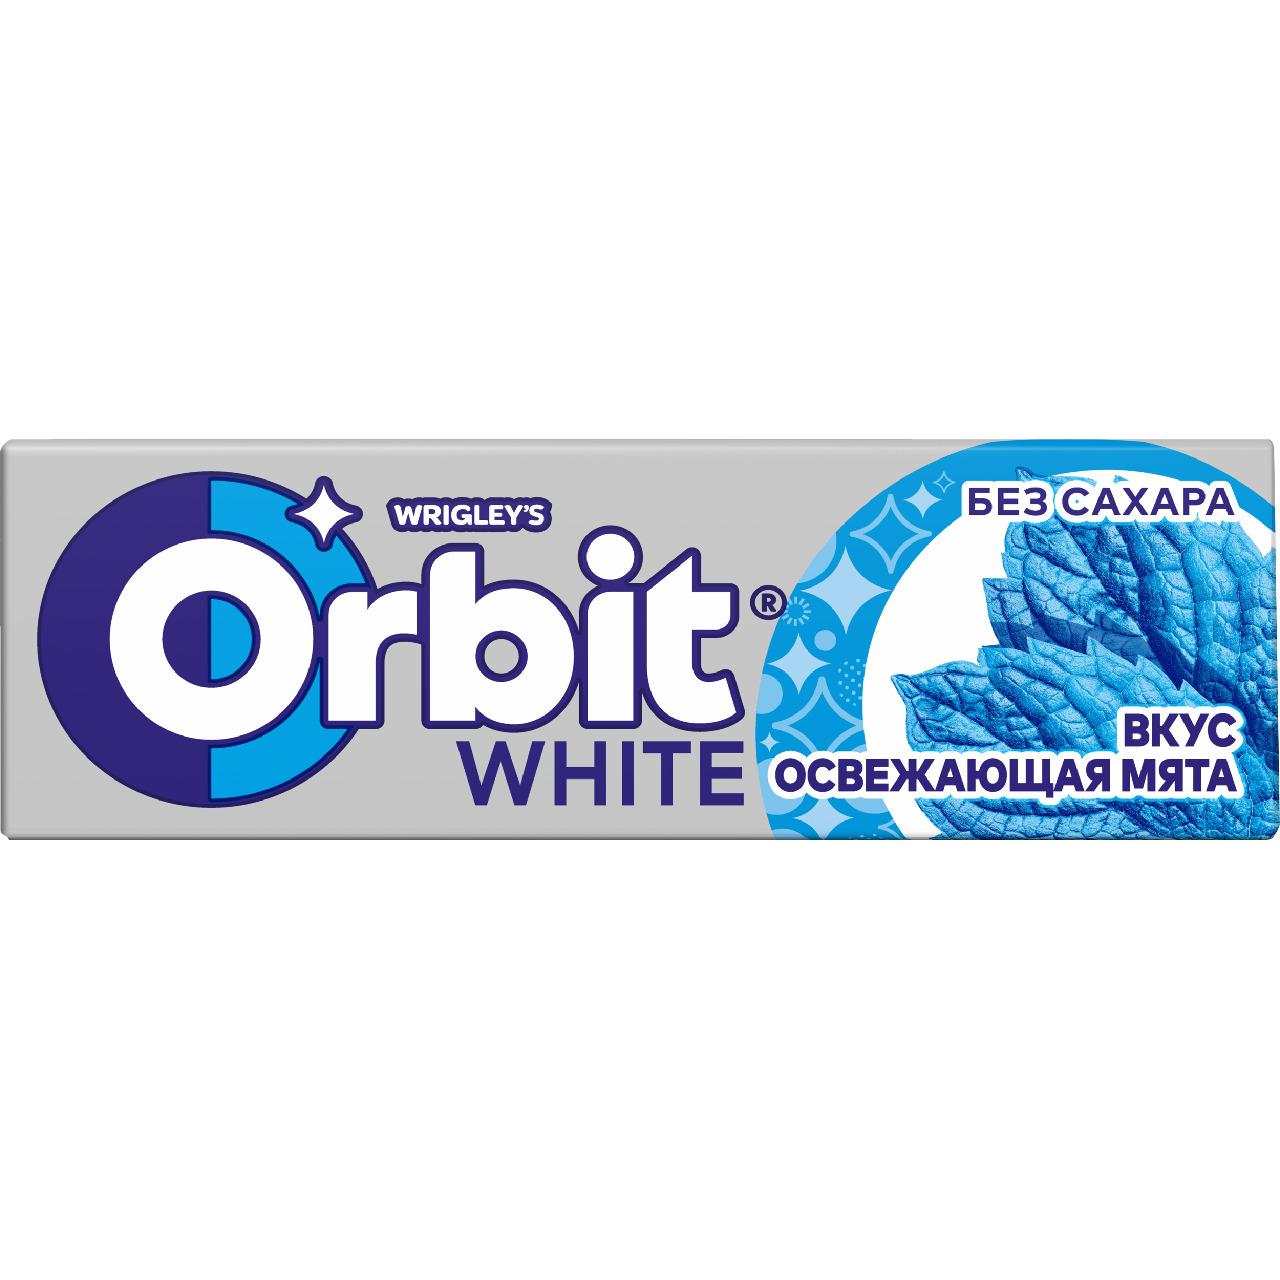 Жевательная резинка Orbit освежающая мята 13.6 гр., обертка